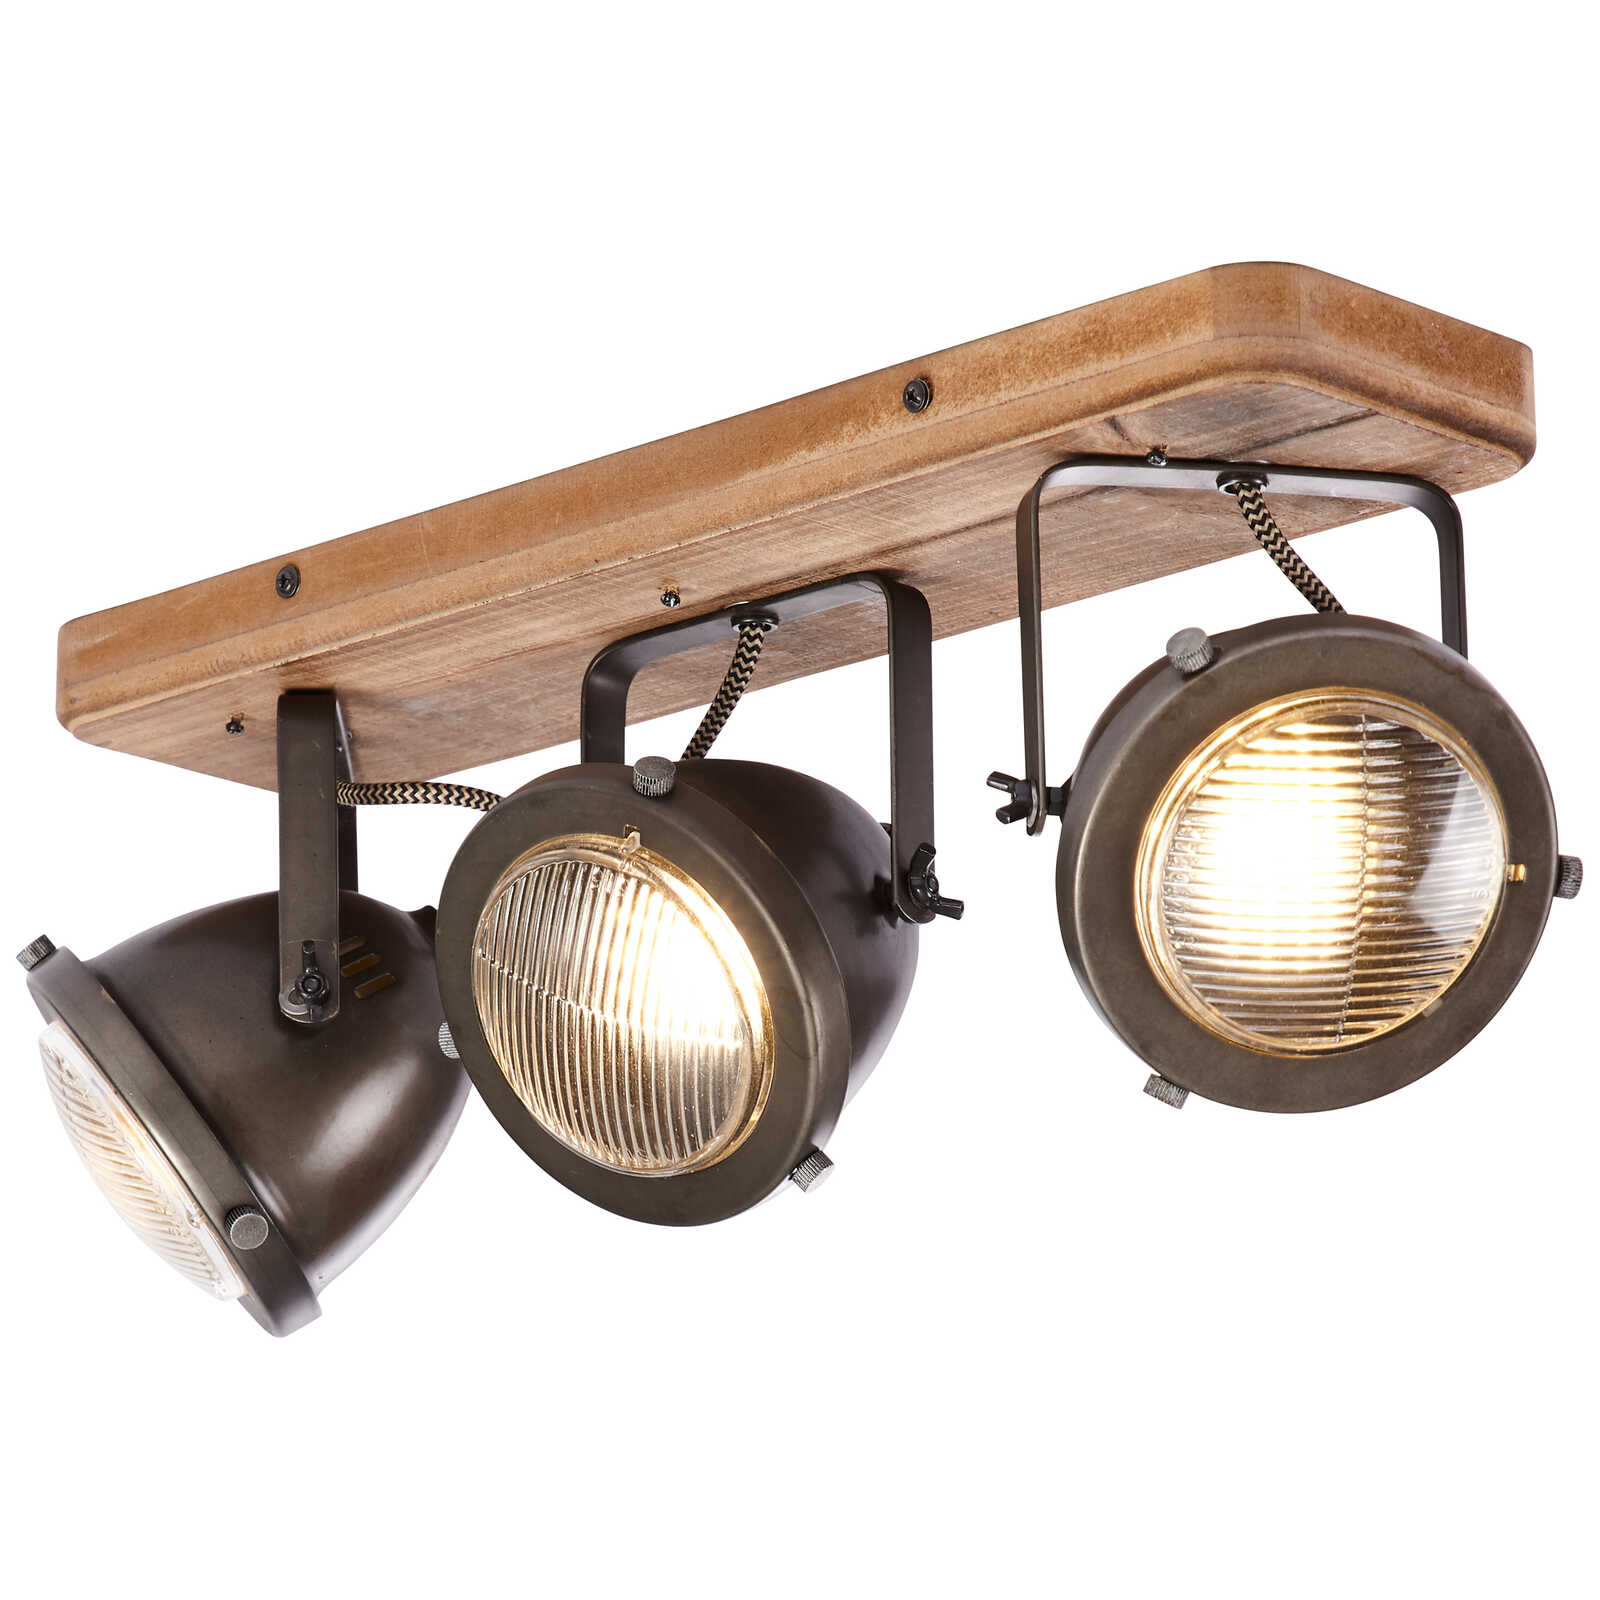             Wooden spotlight bar - Dilara 3 - Brown
        